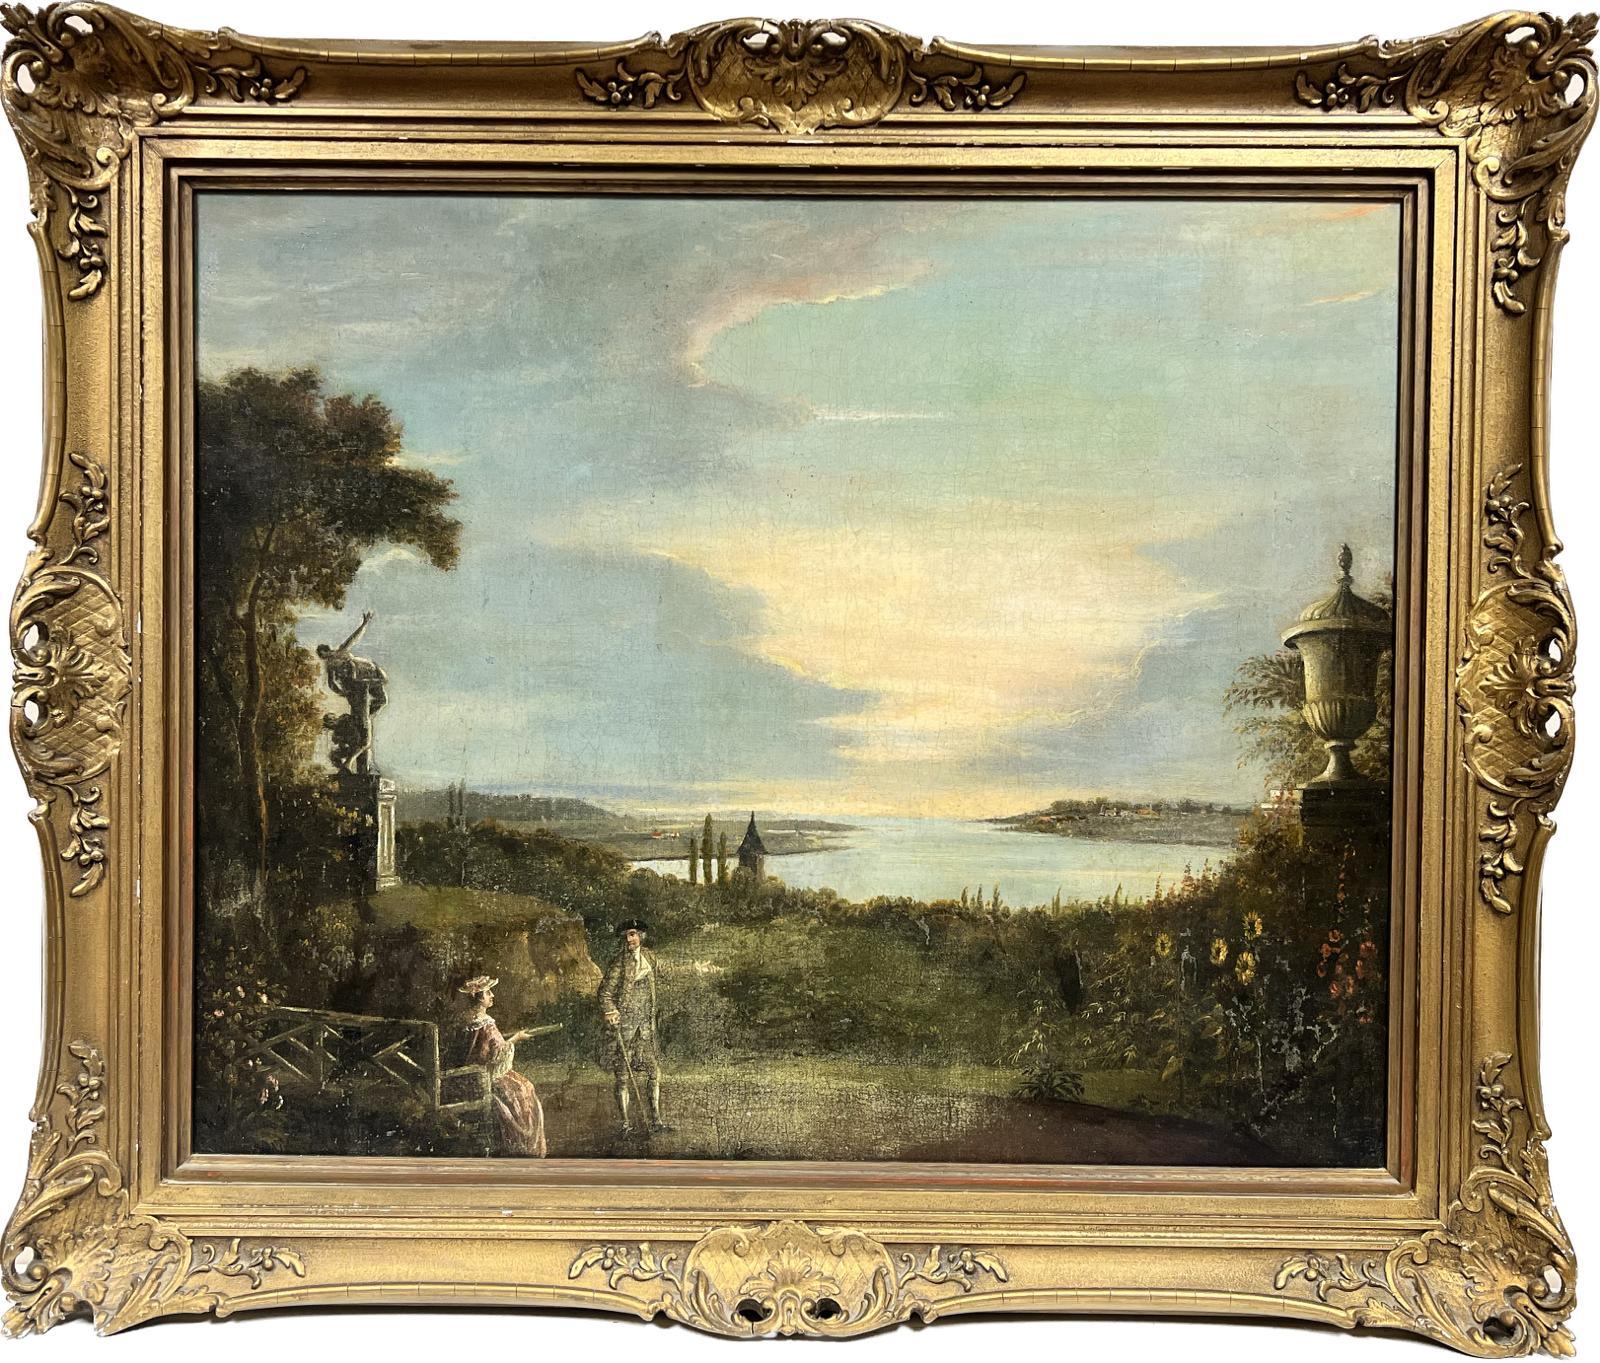 Coplestone Warre Bampfylde Figurative Painting – Klassische italienische Landschafts- und Gartenornamente und Figuren aus dem 18. Jahrhundert